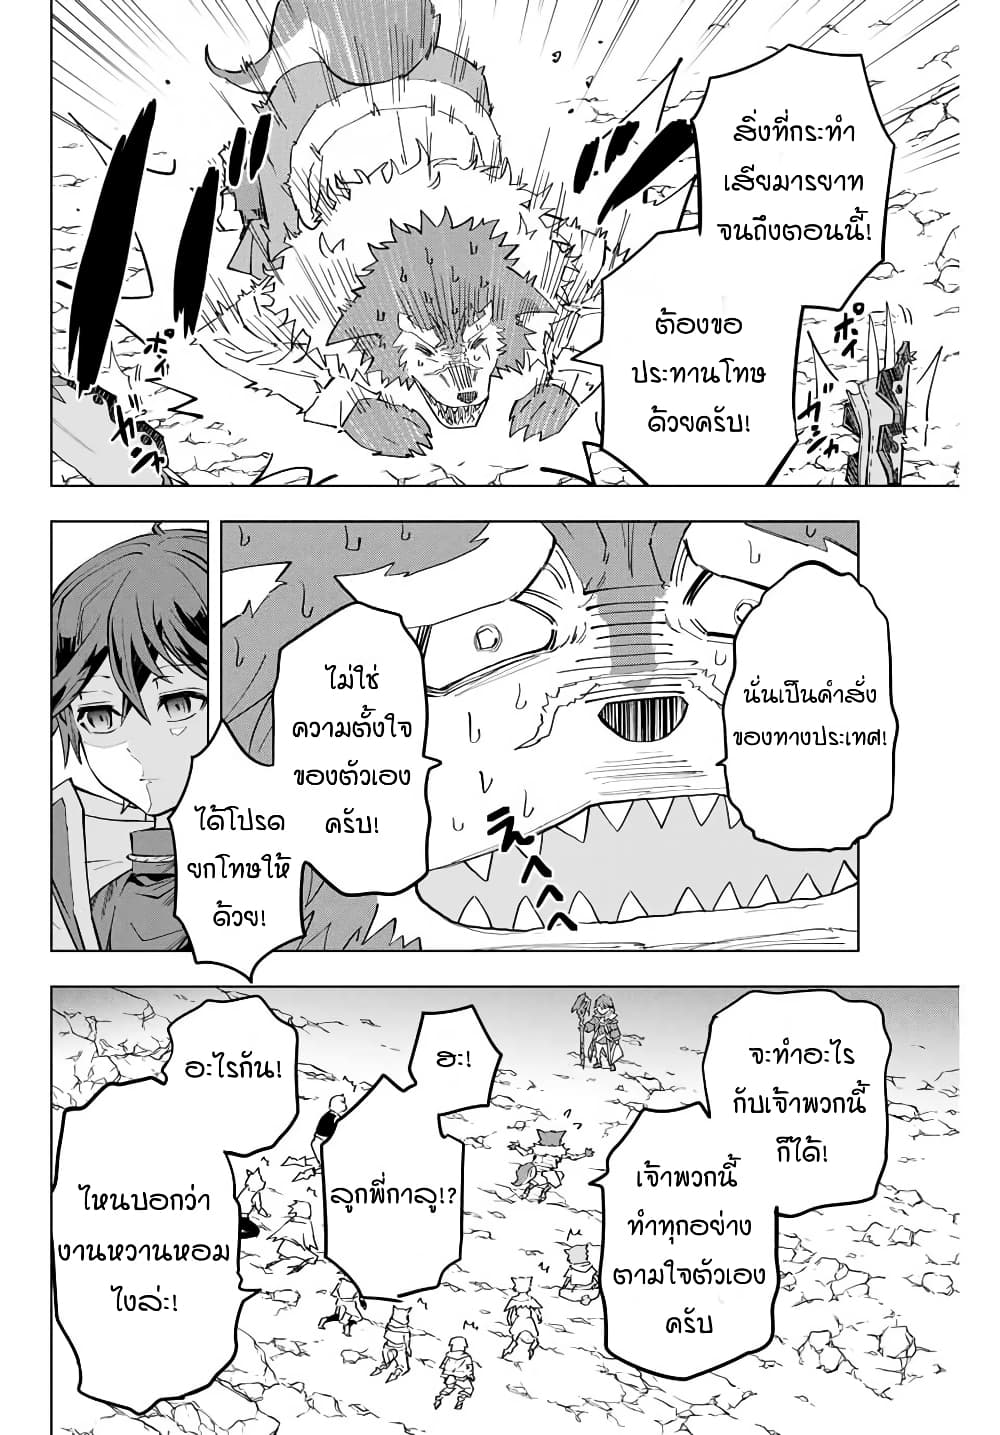 อ่านการ์ตูน Shinjiteita Nakama Tachi Ni Dungeon Okuchi De Korosare Kaketa ga Gift 『Mugen Gacha』 De Level 9999 No Nakama Tachi Wo Te Ni Irete Moto Party Member To Sekai Ni Fukushu & 『Zama A!』 Shimasu! 6 ภาพที่ 4